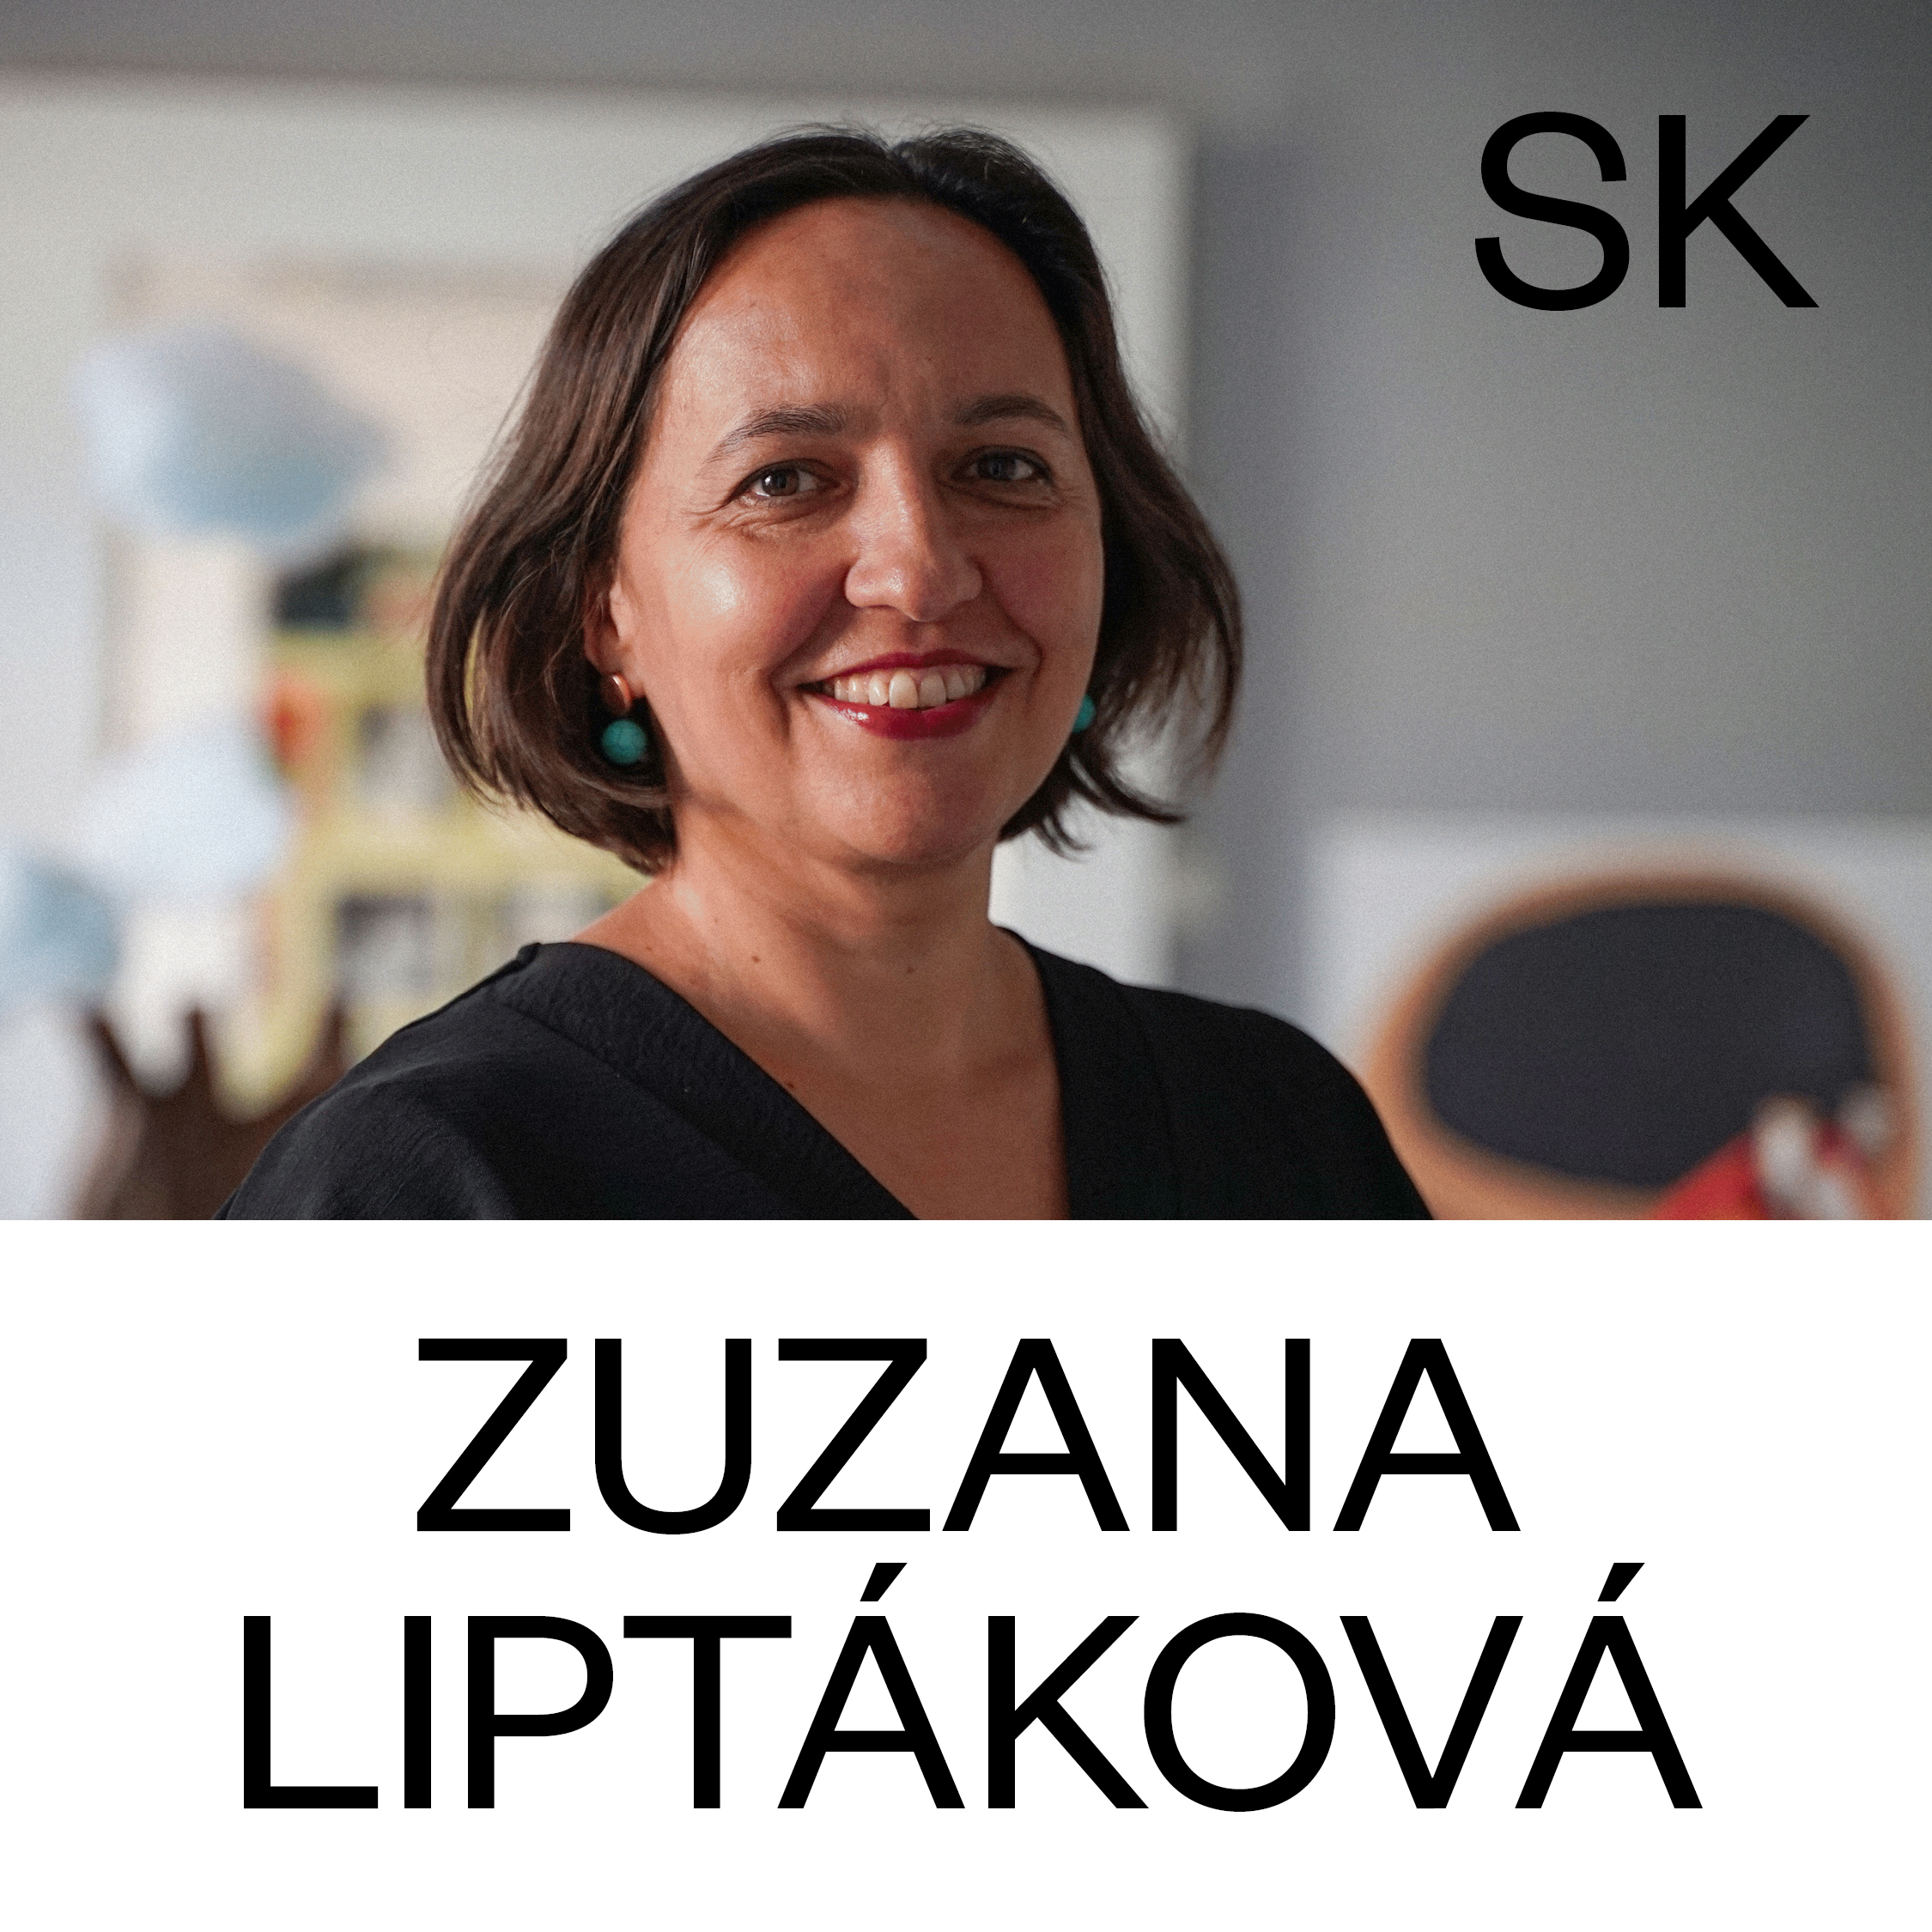 Zuzana Liptakova